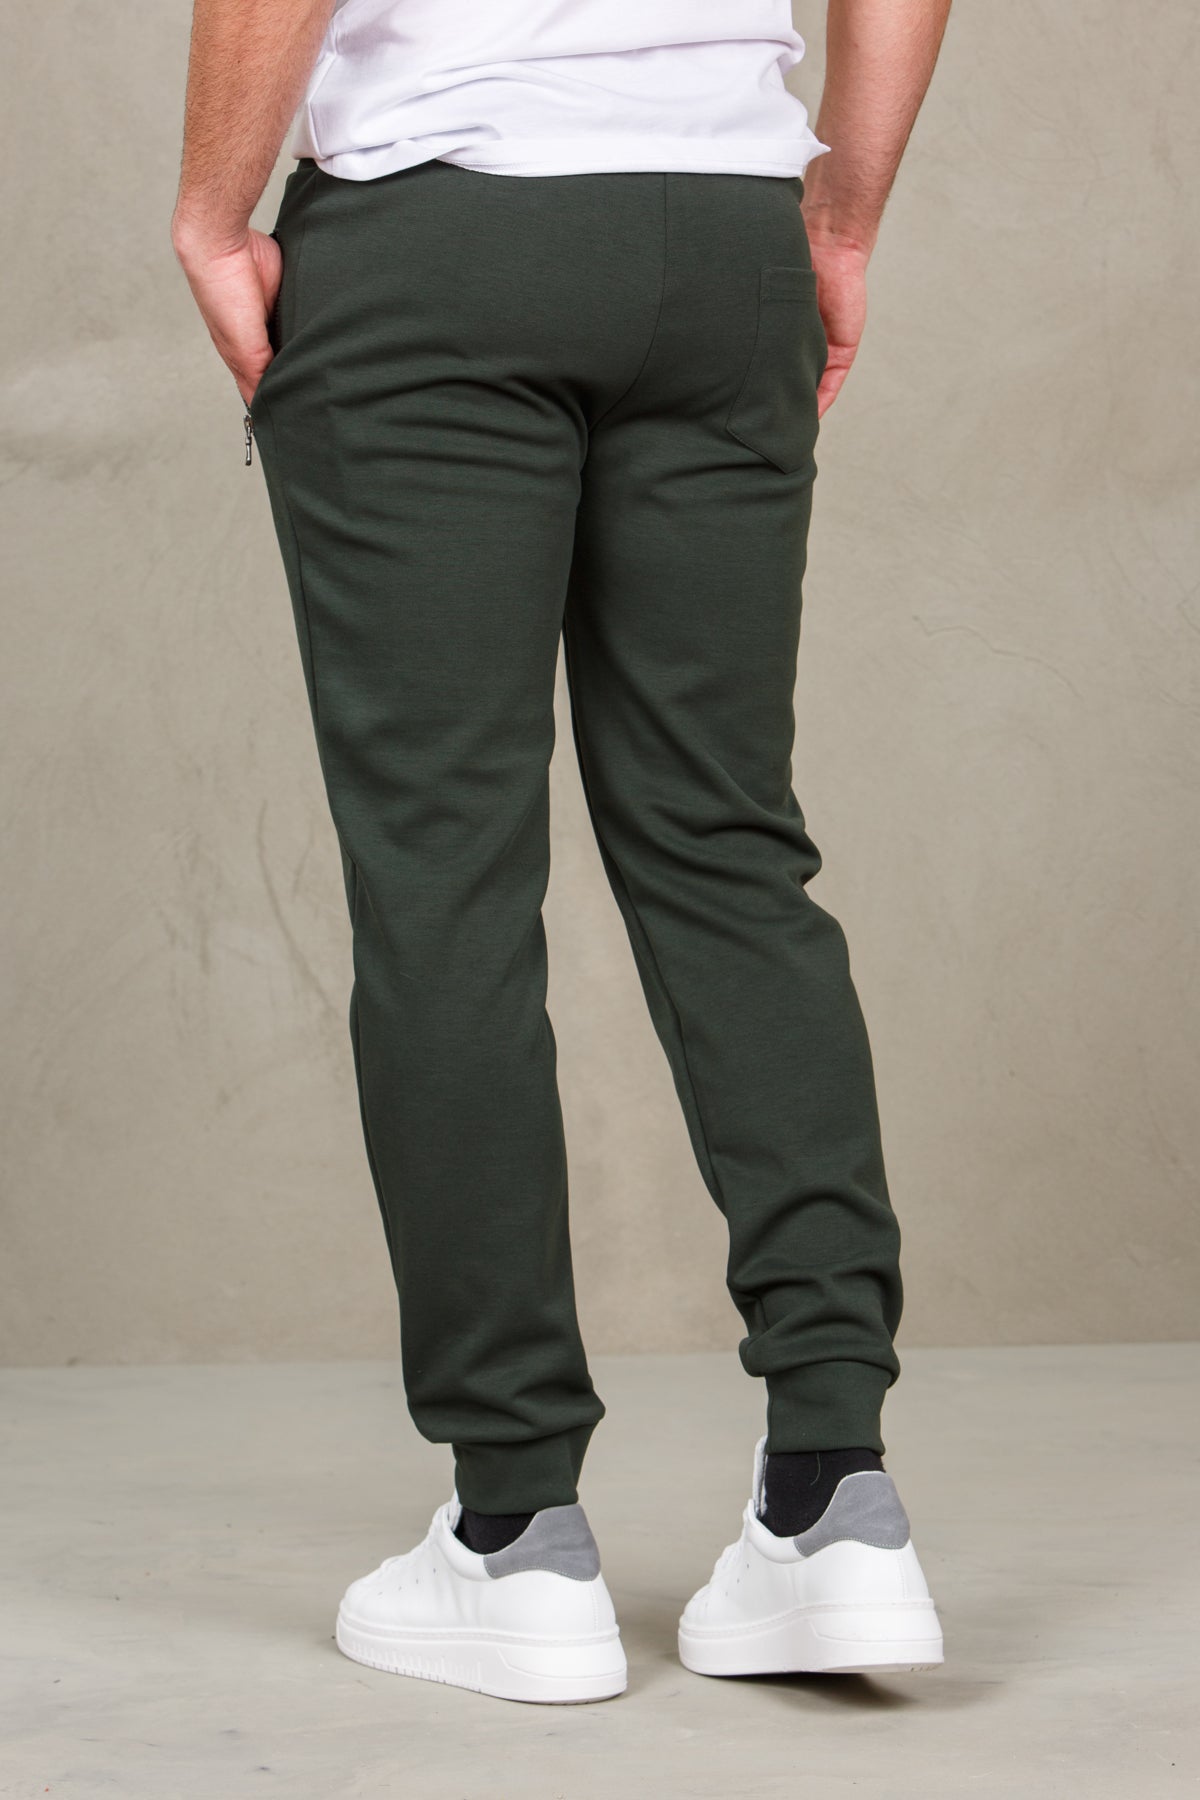 Pantaloni felpa uomo con logo colmar 82666382-military verde man  - 3